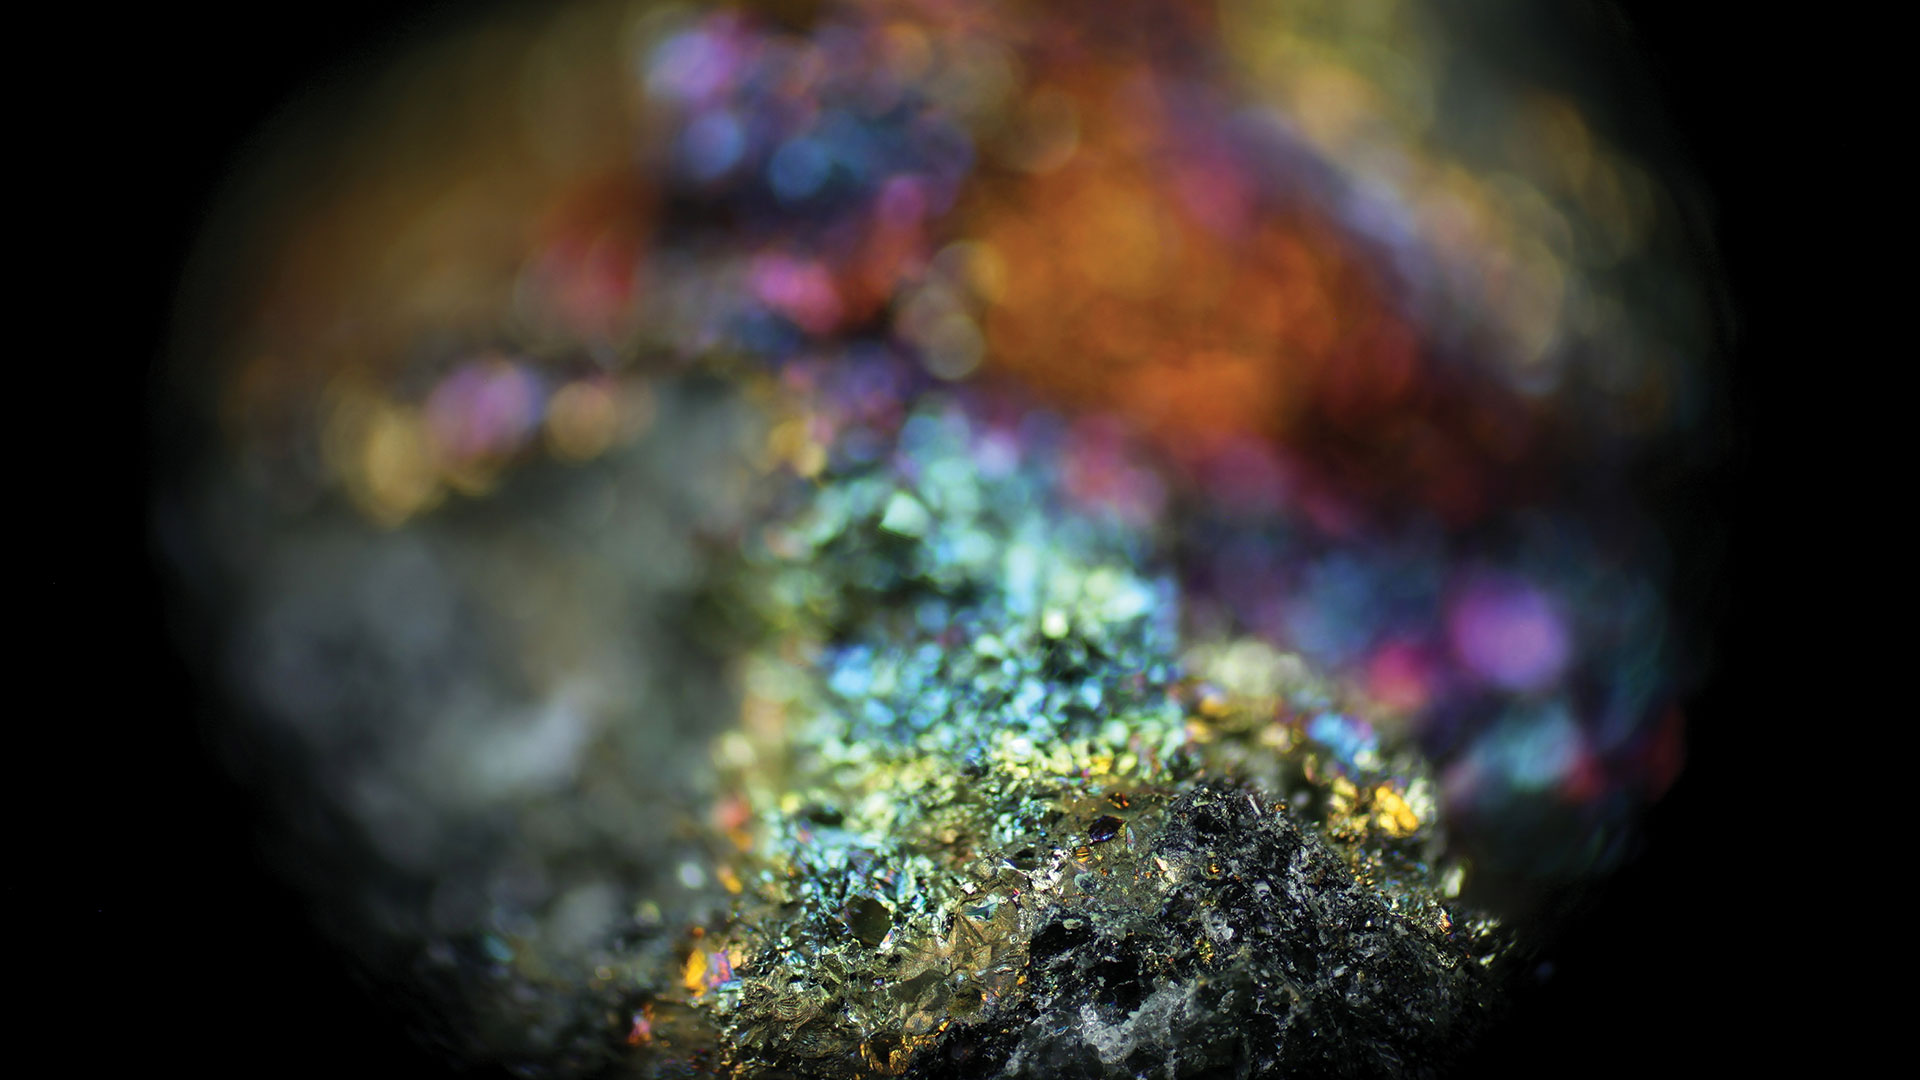 Microscopic photo of copper